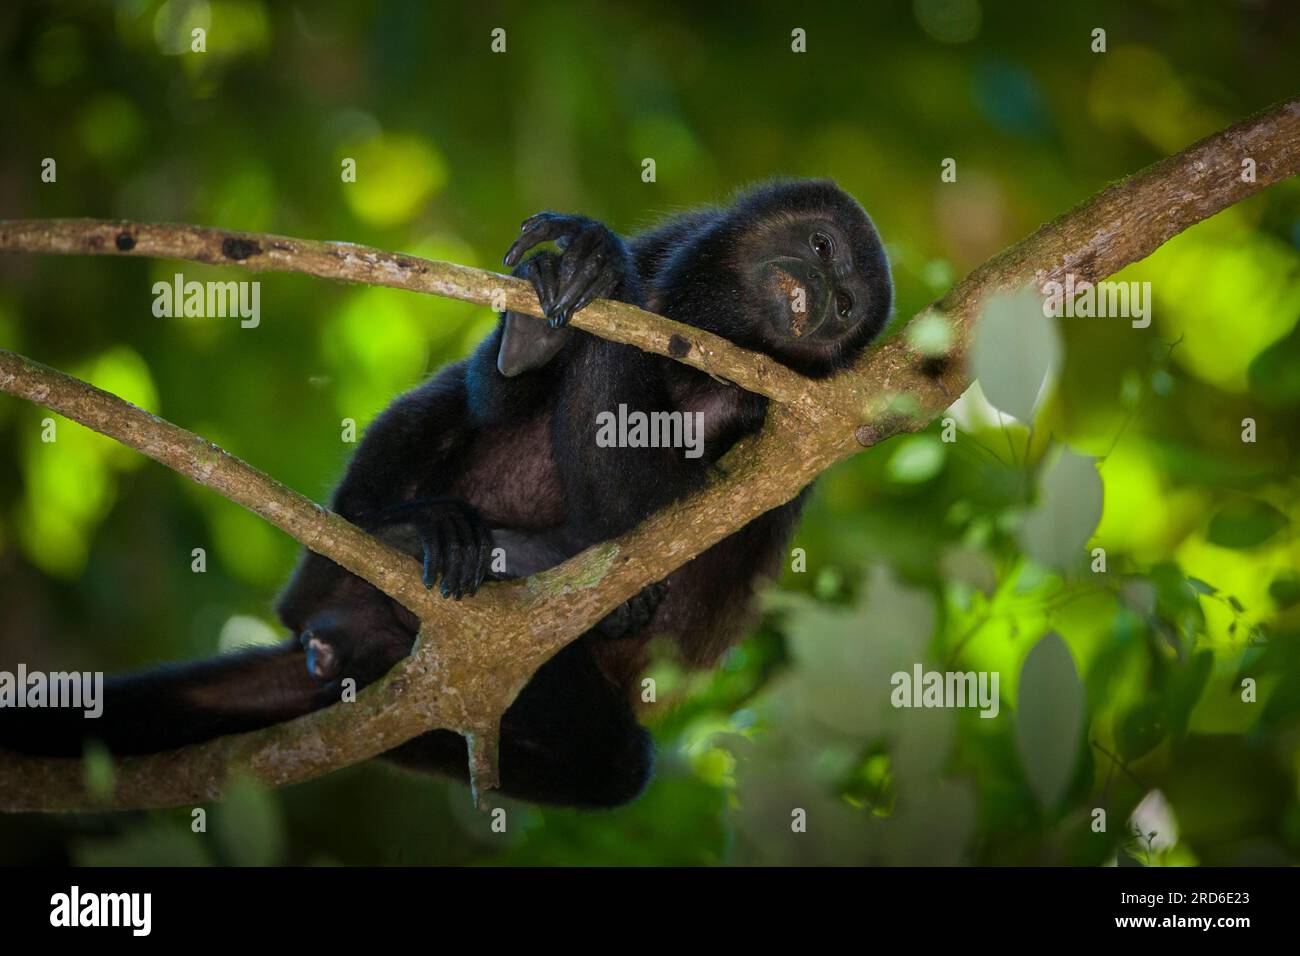 Coiba Howler Monkey, Alouatta coibensis, inside the rainforest at Coiba national park, Pacific ocean, Veraguas province, Republic of Panama. Stock Photo